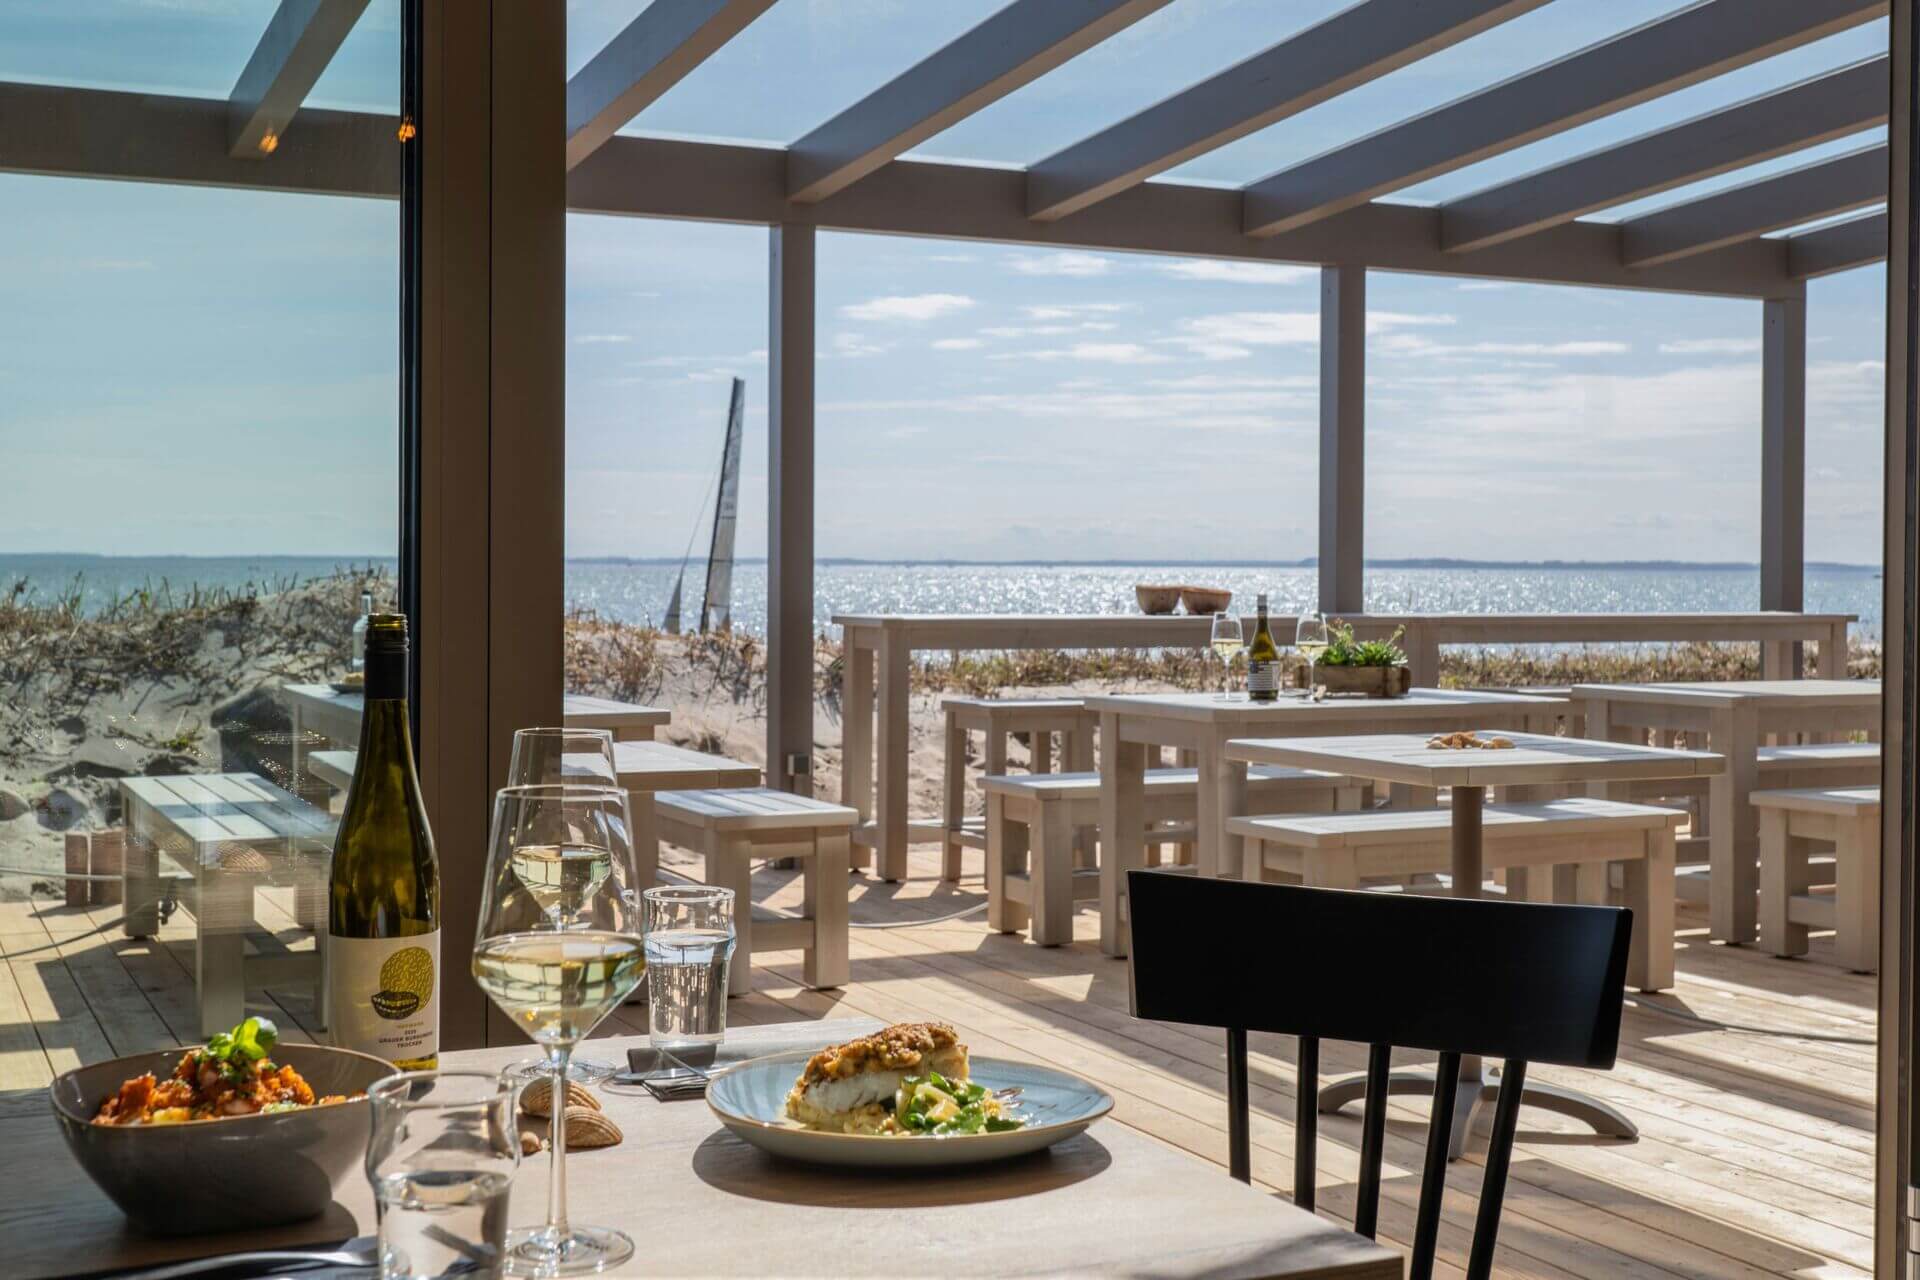 Eine elegante Strandbar mit einer Terrasse bietet einen atemberaubenden Blick auf das Meer. Im Vordergrund steht ein Tisch mit einem Teller Essen, einem Glas Weißwein und einer offenen Flasche Wein. Die Terrasse ist mit modernen, weißen Holzmöbeln ausgest